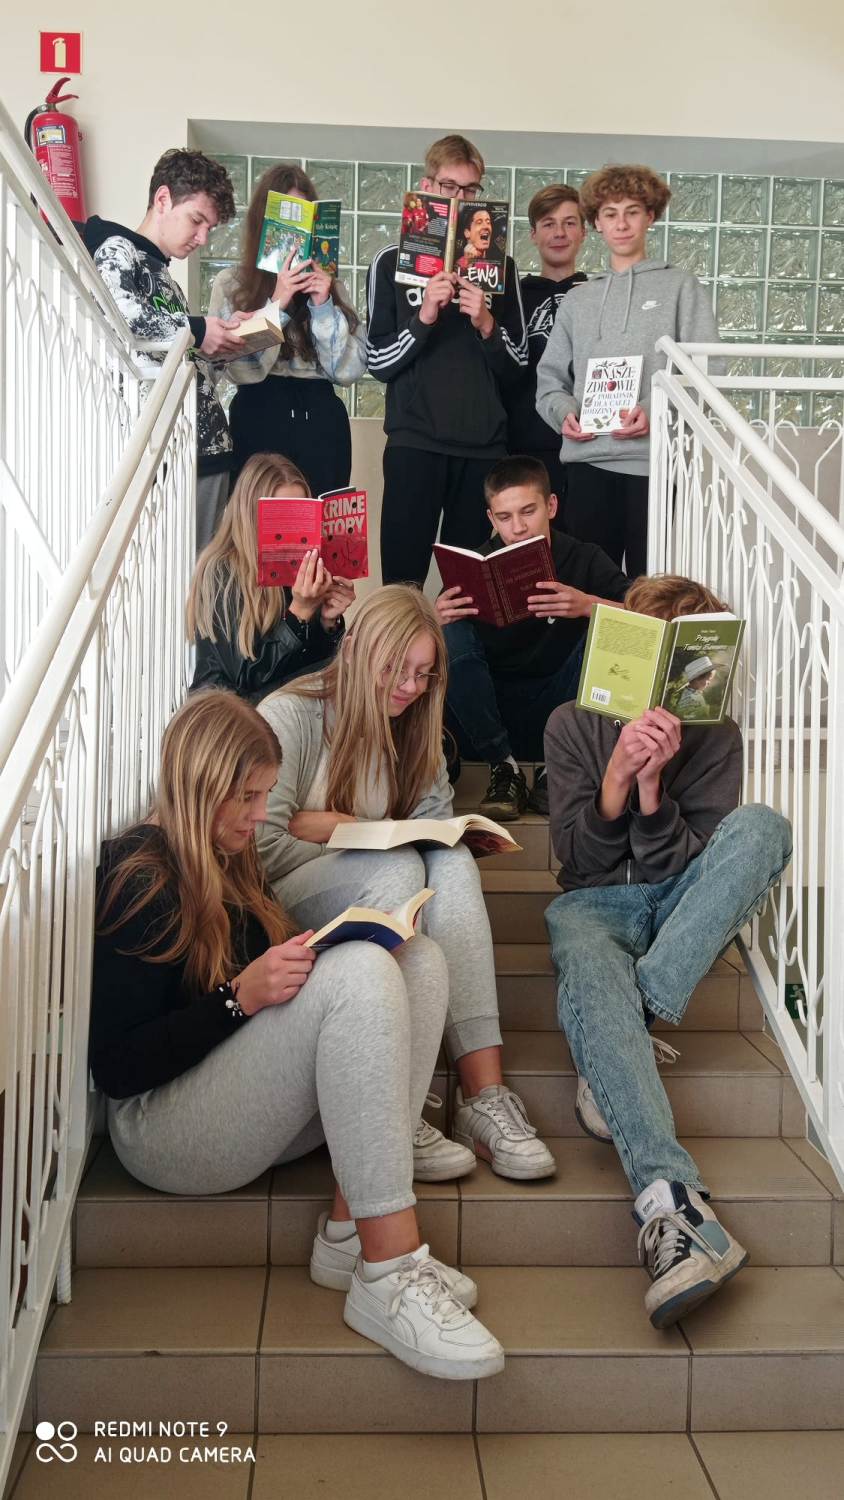 Akcja przerwa na czytanie - uczniowie czytają książki na schodach przy auli szkolnej